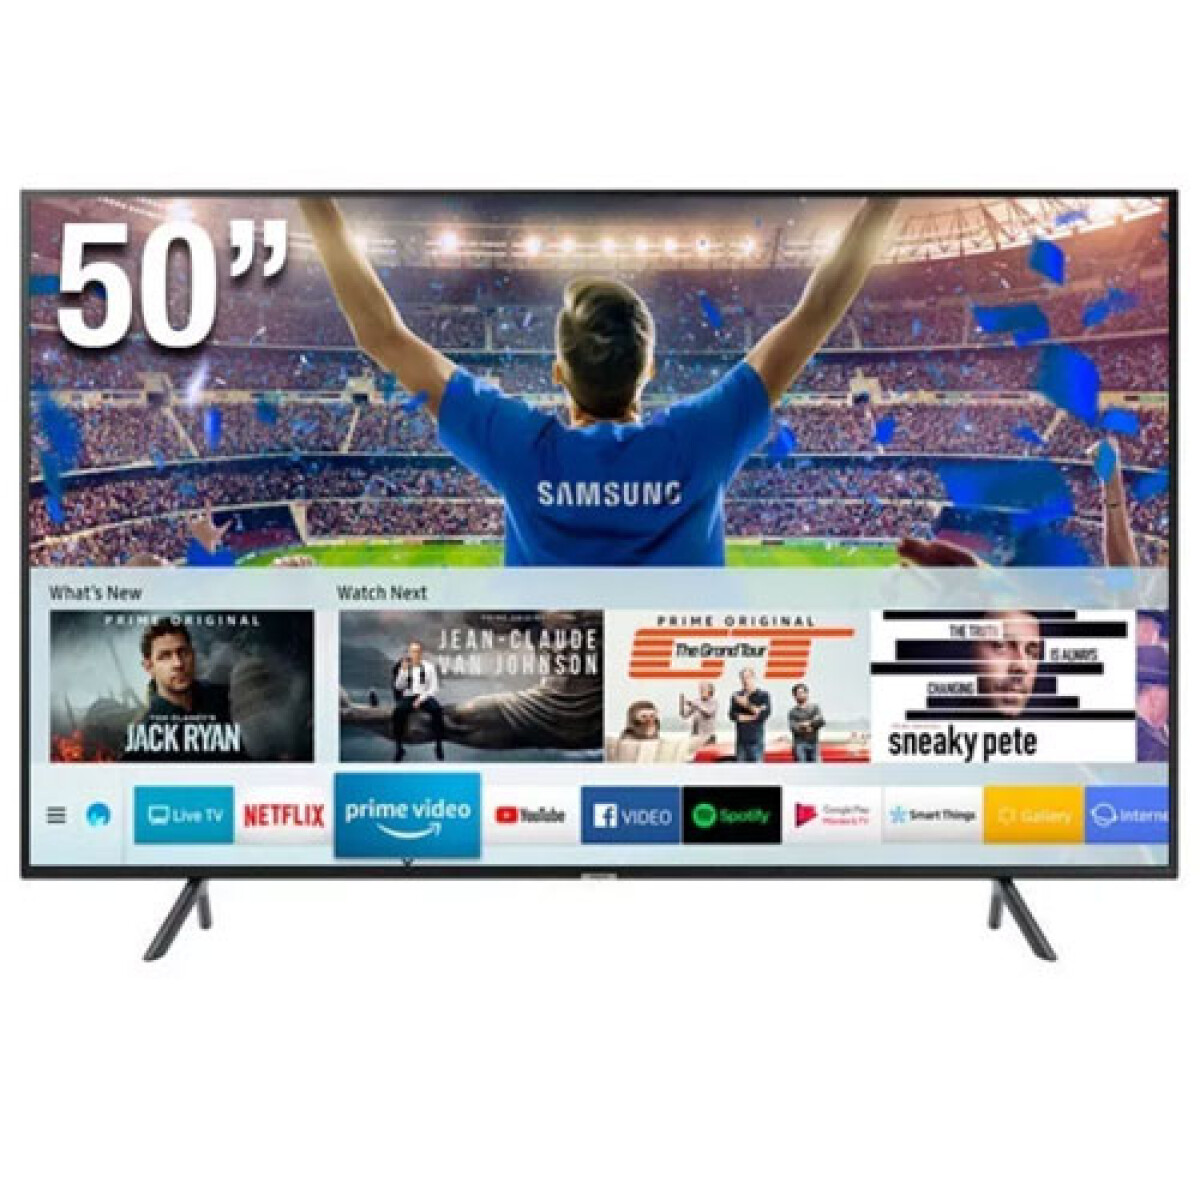 TV SAMSUNG 50” 4K UHD UN50AU7000 / UN50TU7100 - Sin color 